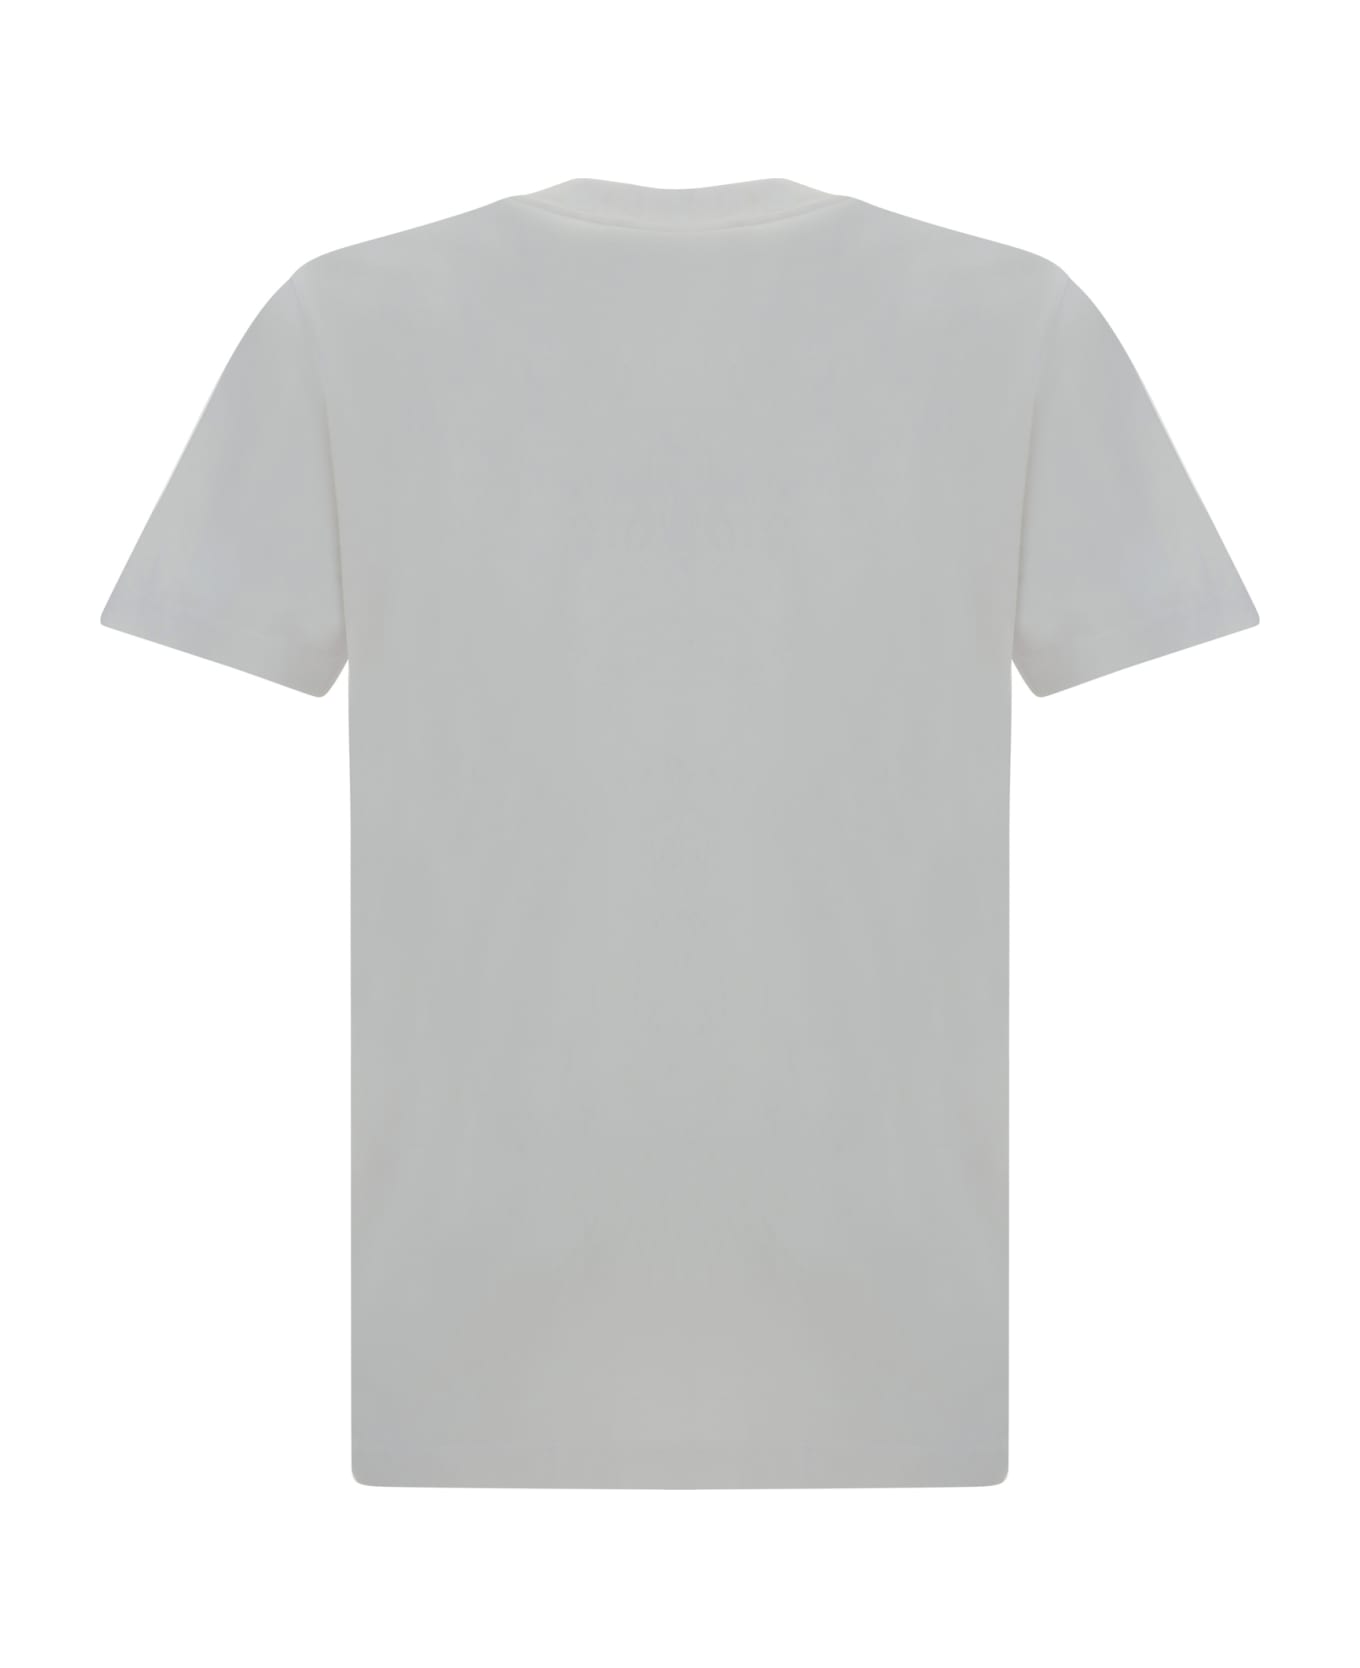 Marni T-shirt - White シャツ